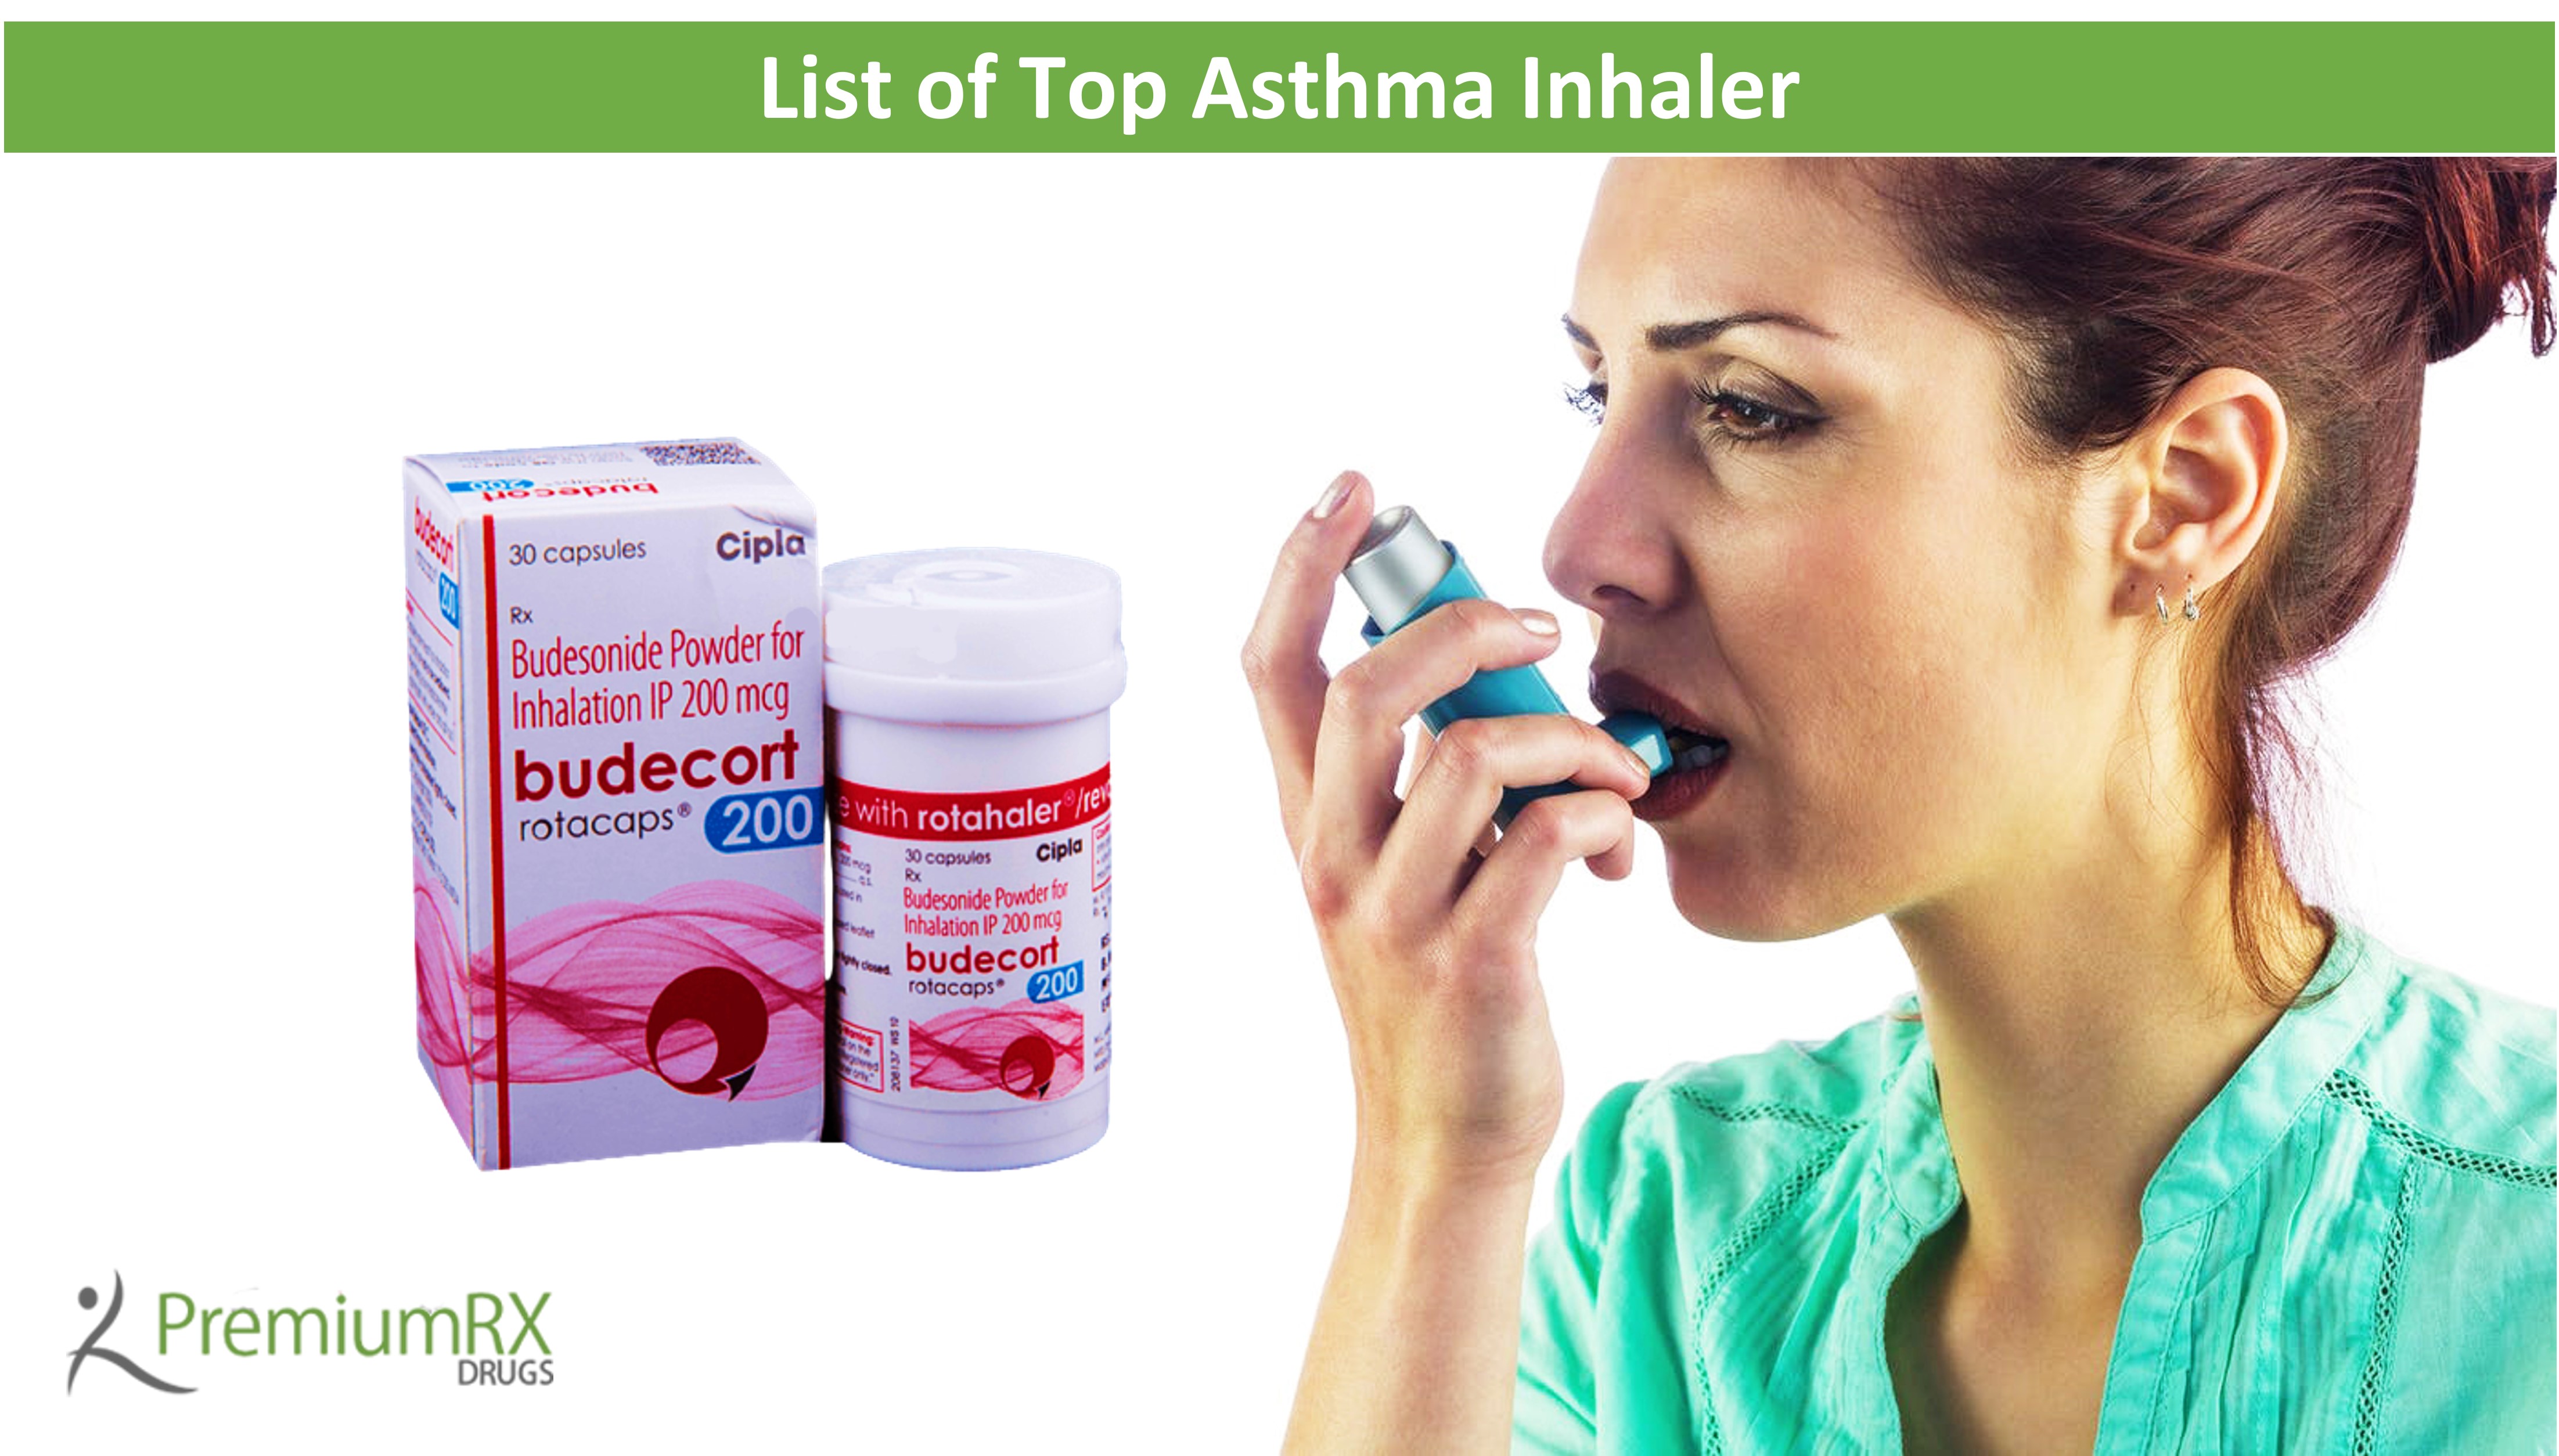 List of Top Asthma Inhaler